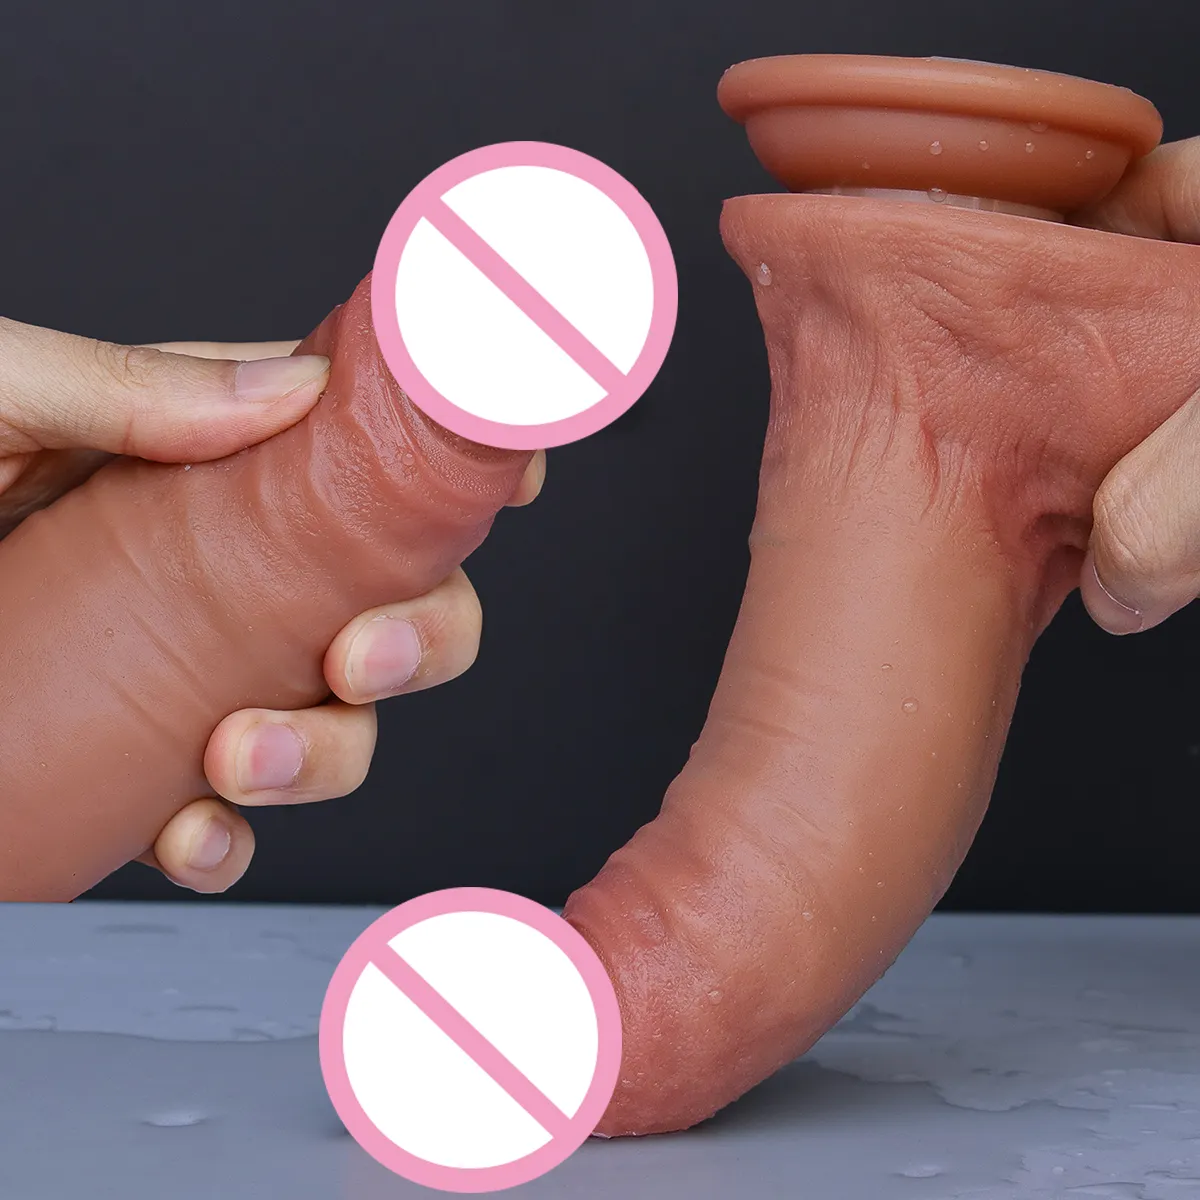 Mainan seks semprotan wanita masturbator Vagina, kontol silikon tebal Super lembut dengan tali cangkir hisap pada ejakulasi